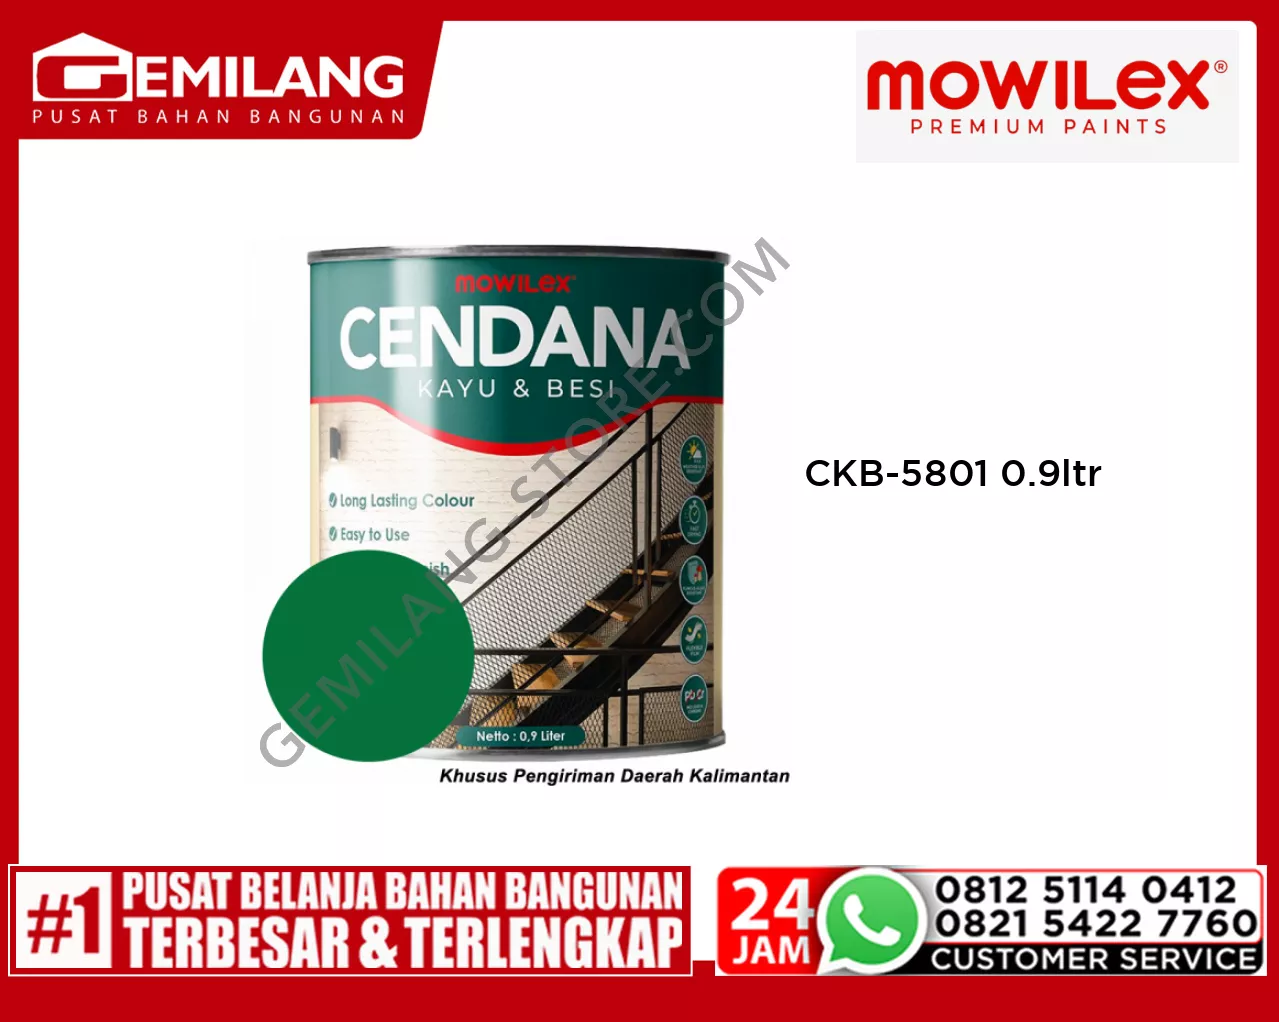 MOWILEX CENDANA KAYU & BESI CKB-5801 COSMIC LEAF 0.9ltr